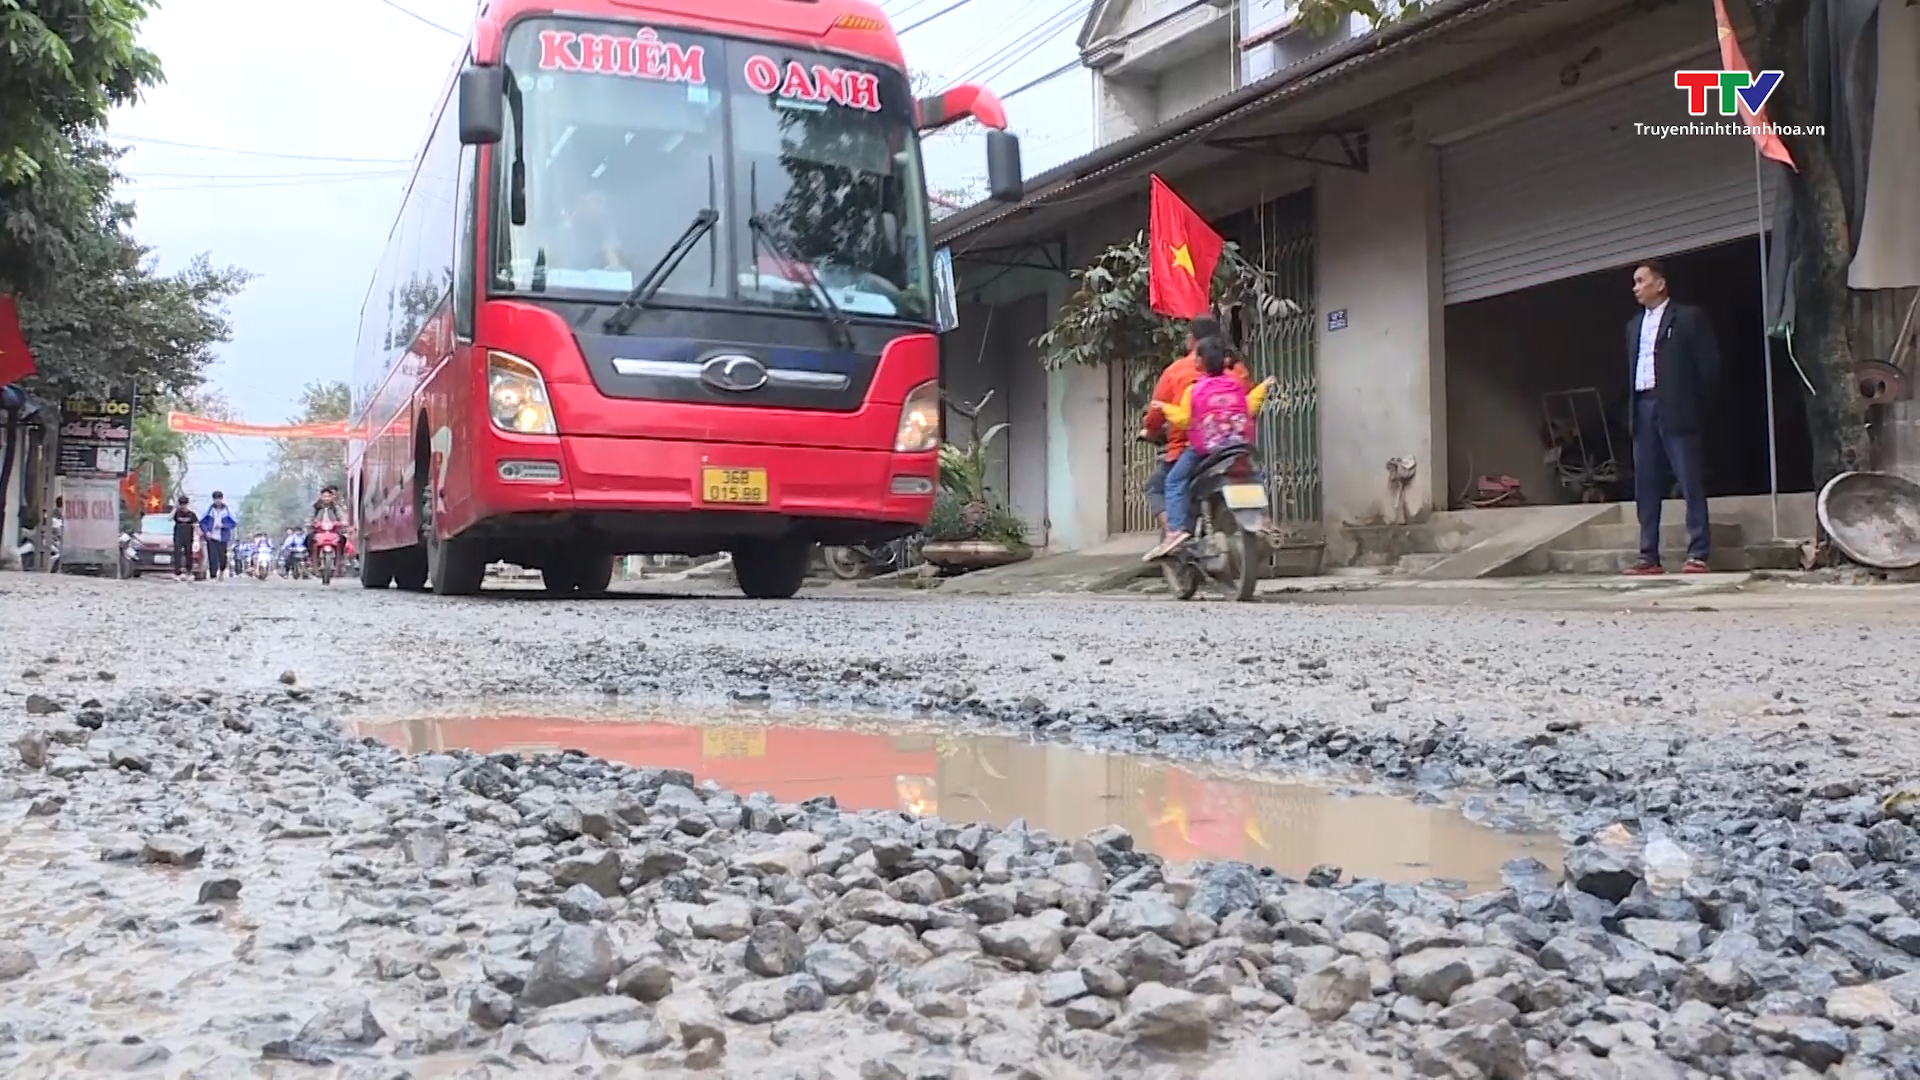 Tuyến đường liên xã Yên Tâm- Yên Phú, huyện Yên Định xuống cấp gây mất an toàn giao thông - Ảnh 2.